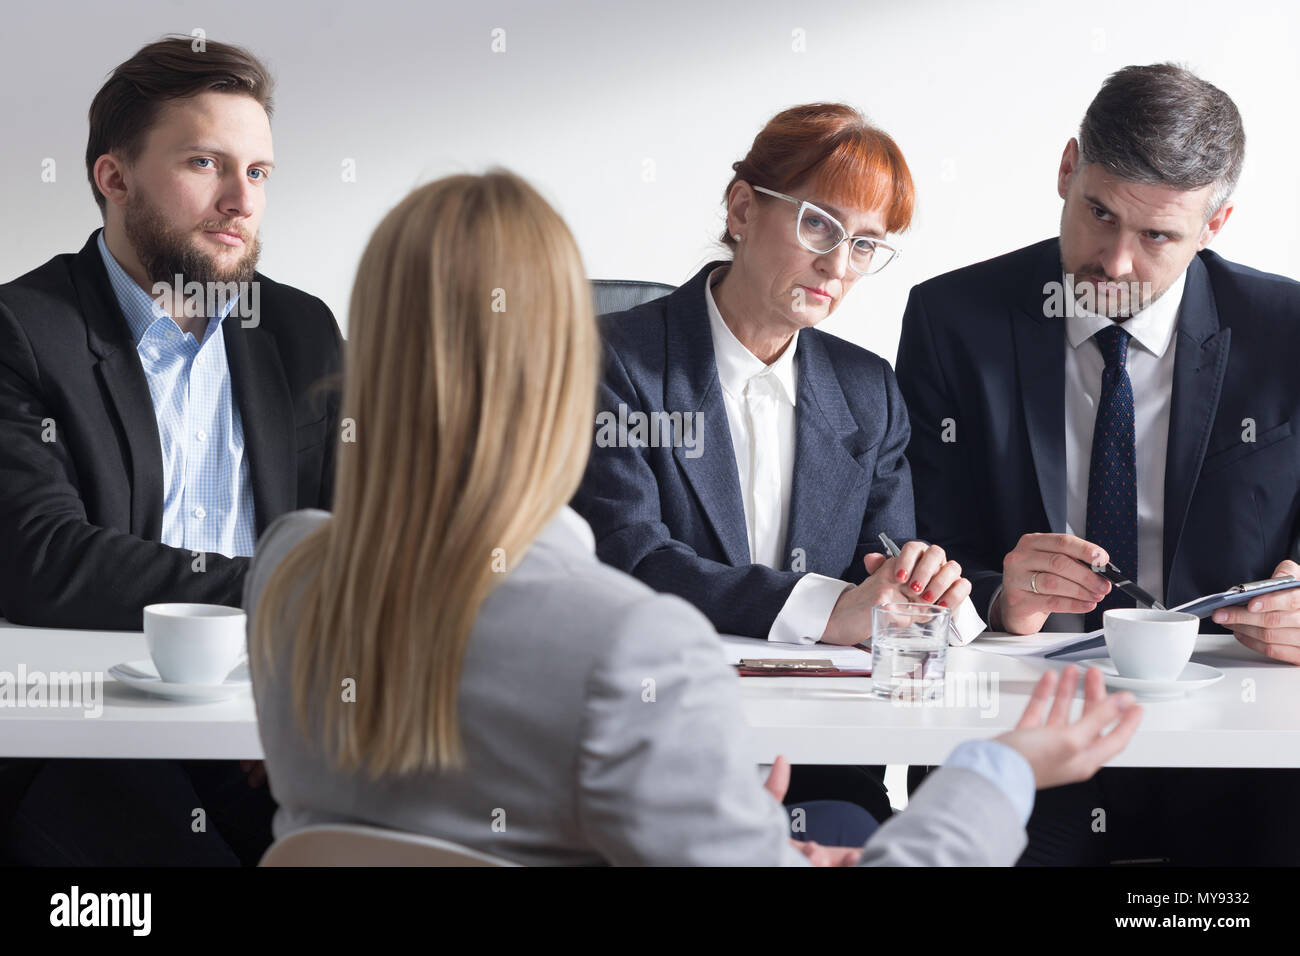 Frau von hinten während des Interviews und drei Corporate Arbeitnehmer Stockfoto